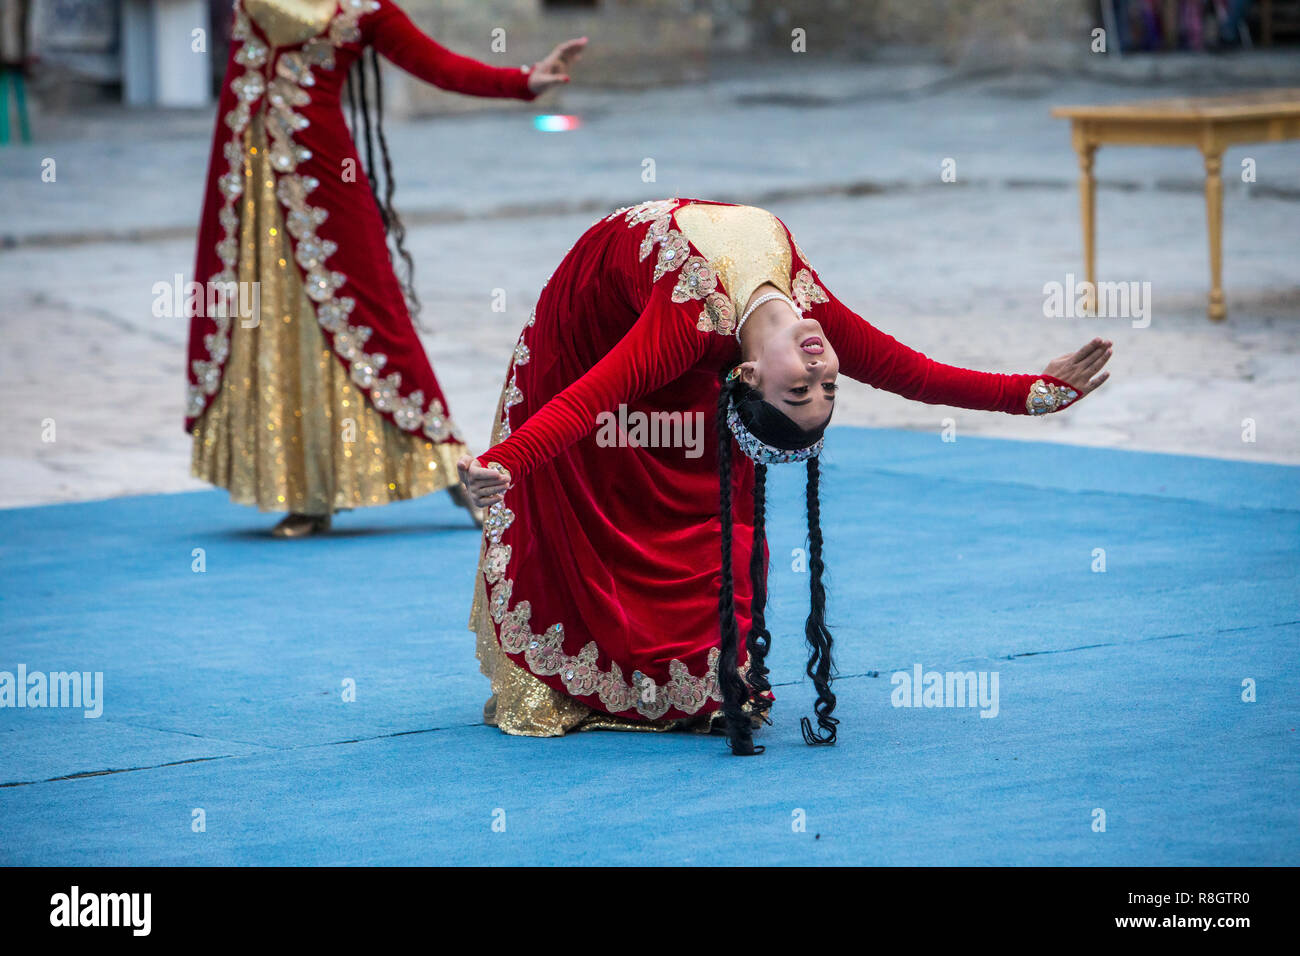 La danse traditionnelle, folklore, spectacle, spectacles, performances, Samarkand, Ouzbékistan Banque D'Images